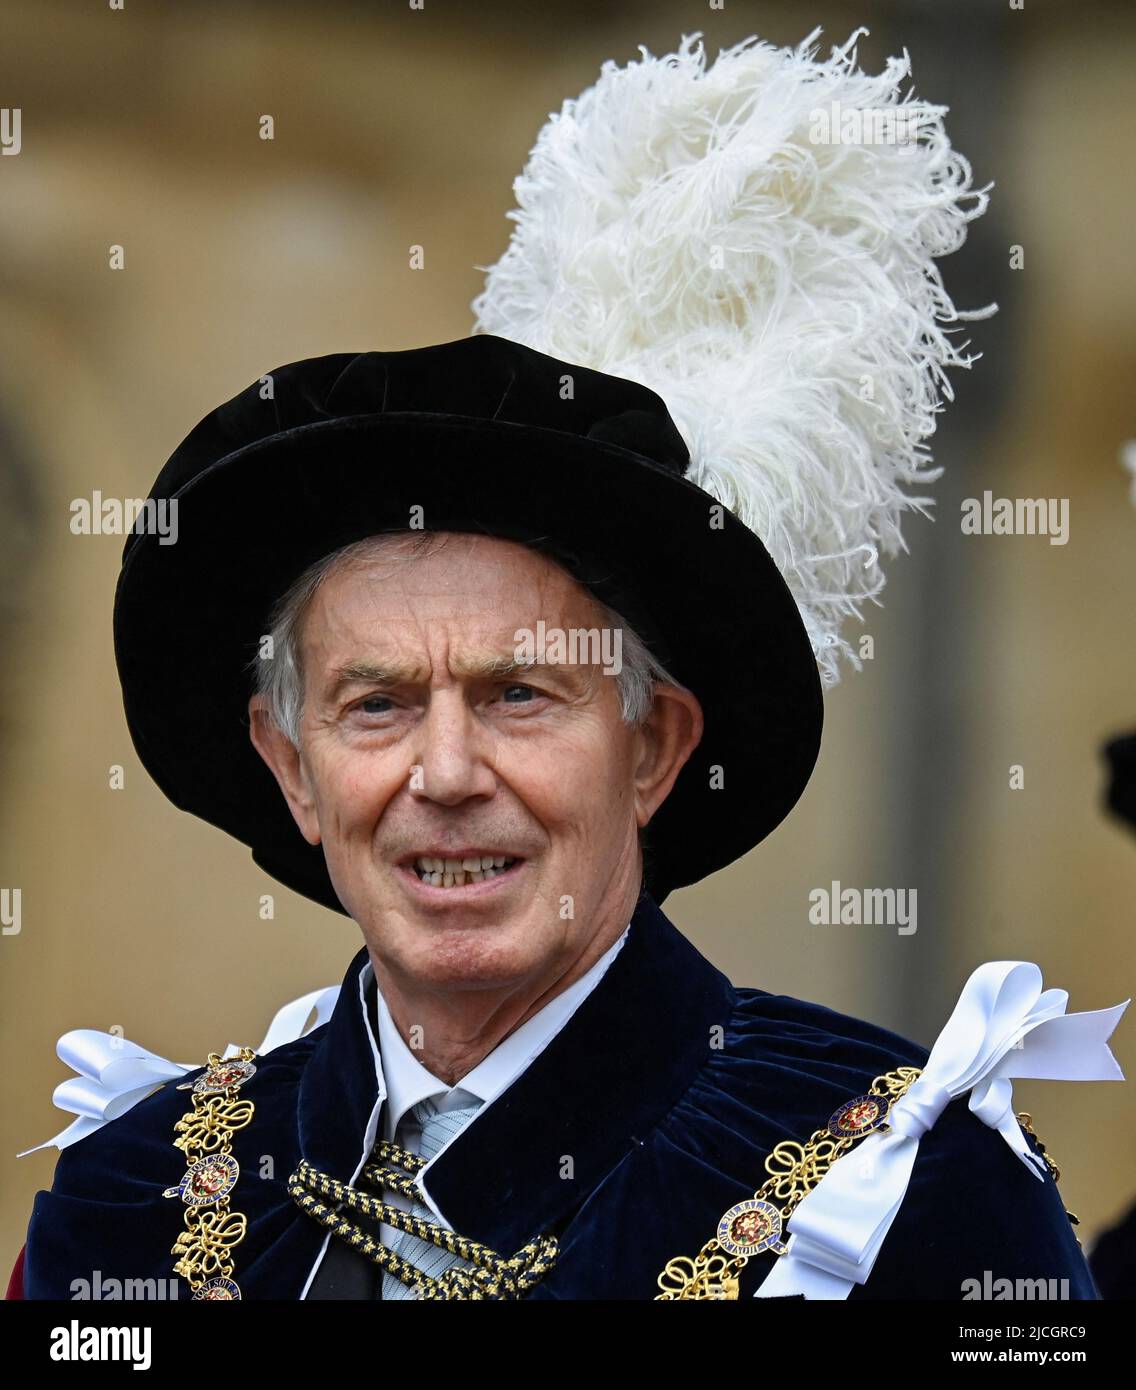 El ex Primer Ministro Sir Tony Blair durante la Orden anual del Servicio de la Garter en la Capilla de San Jorge, Castillo de Windsor. Fecha de la foto: Lunes 13 de junio de 2022. Foto de stock